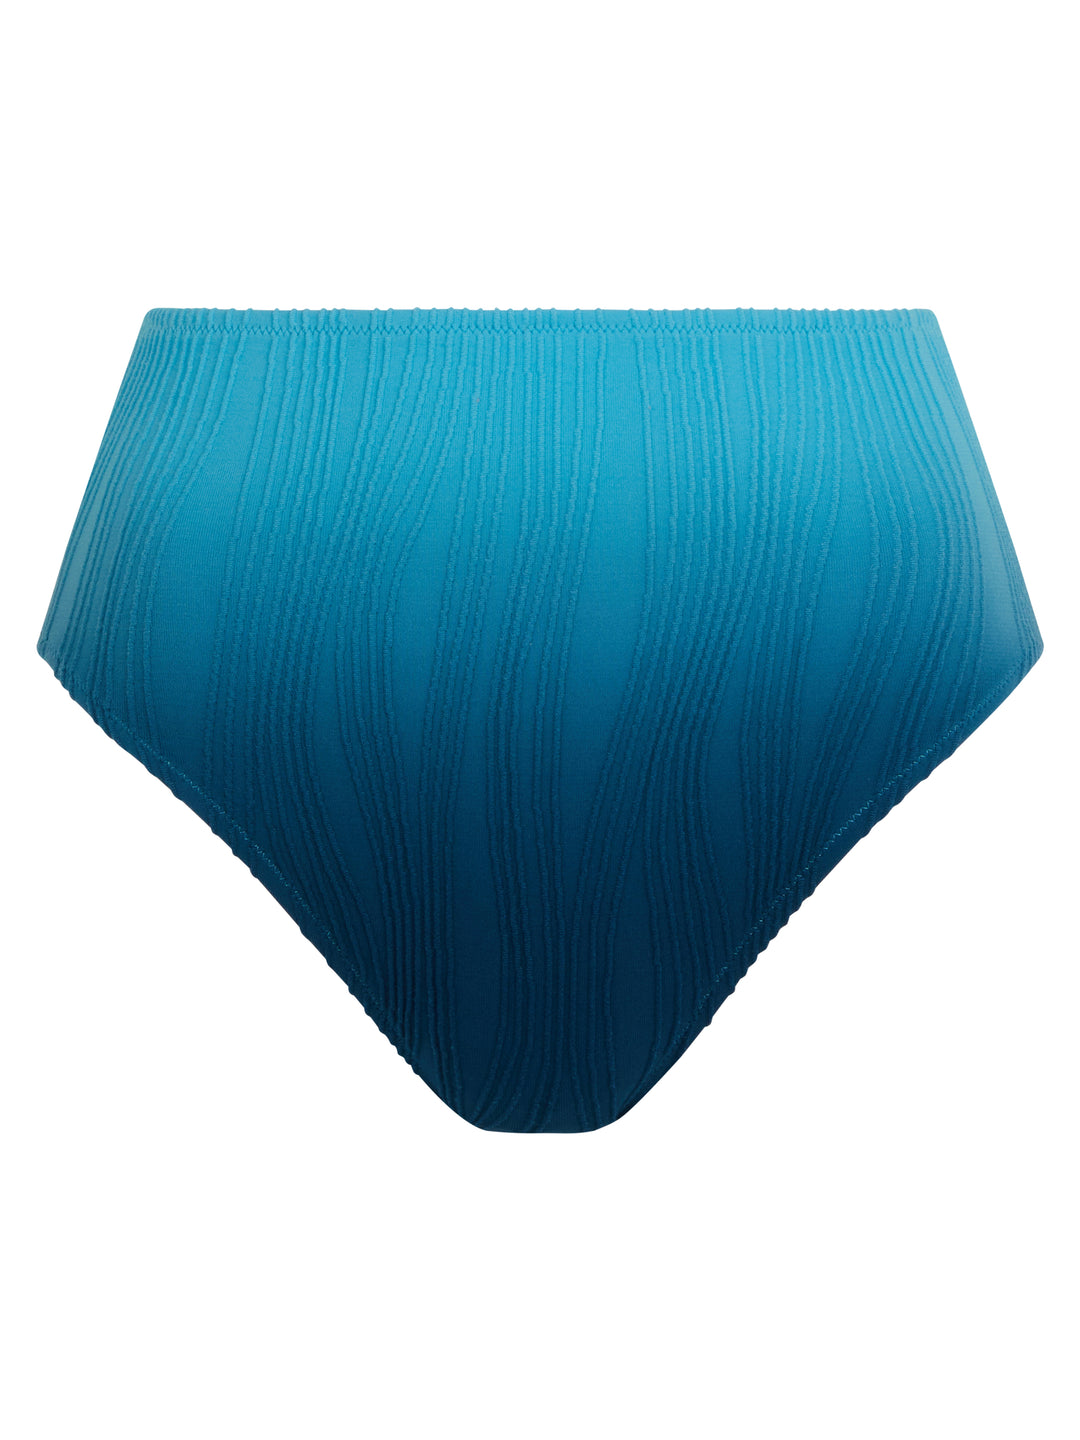 Chantelle Maillots de Bain - Slip de Bain Taille Unique Bleu tie & dye